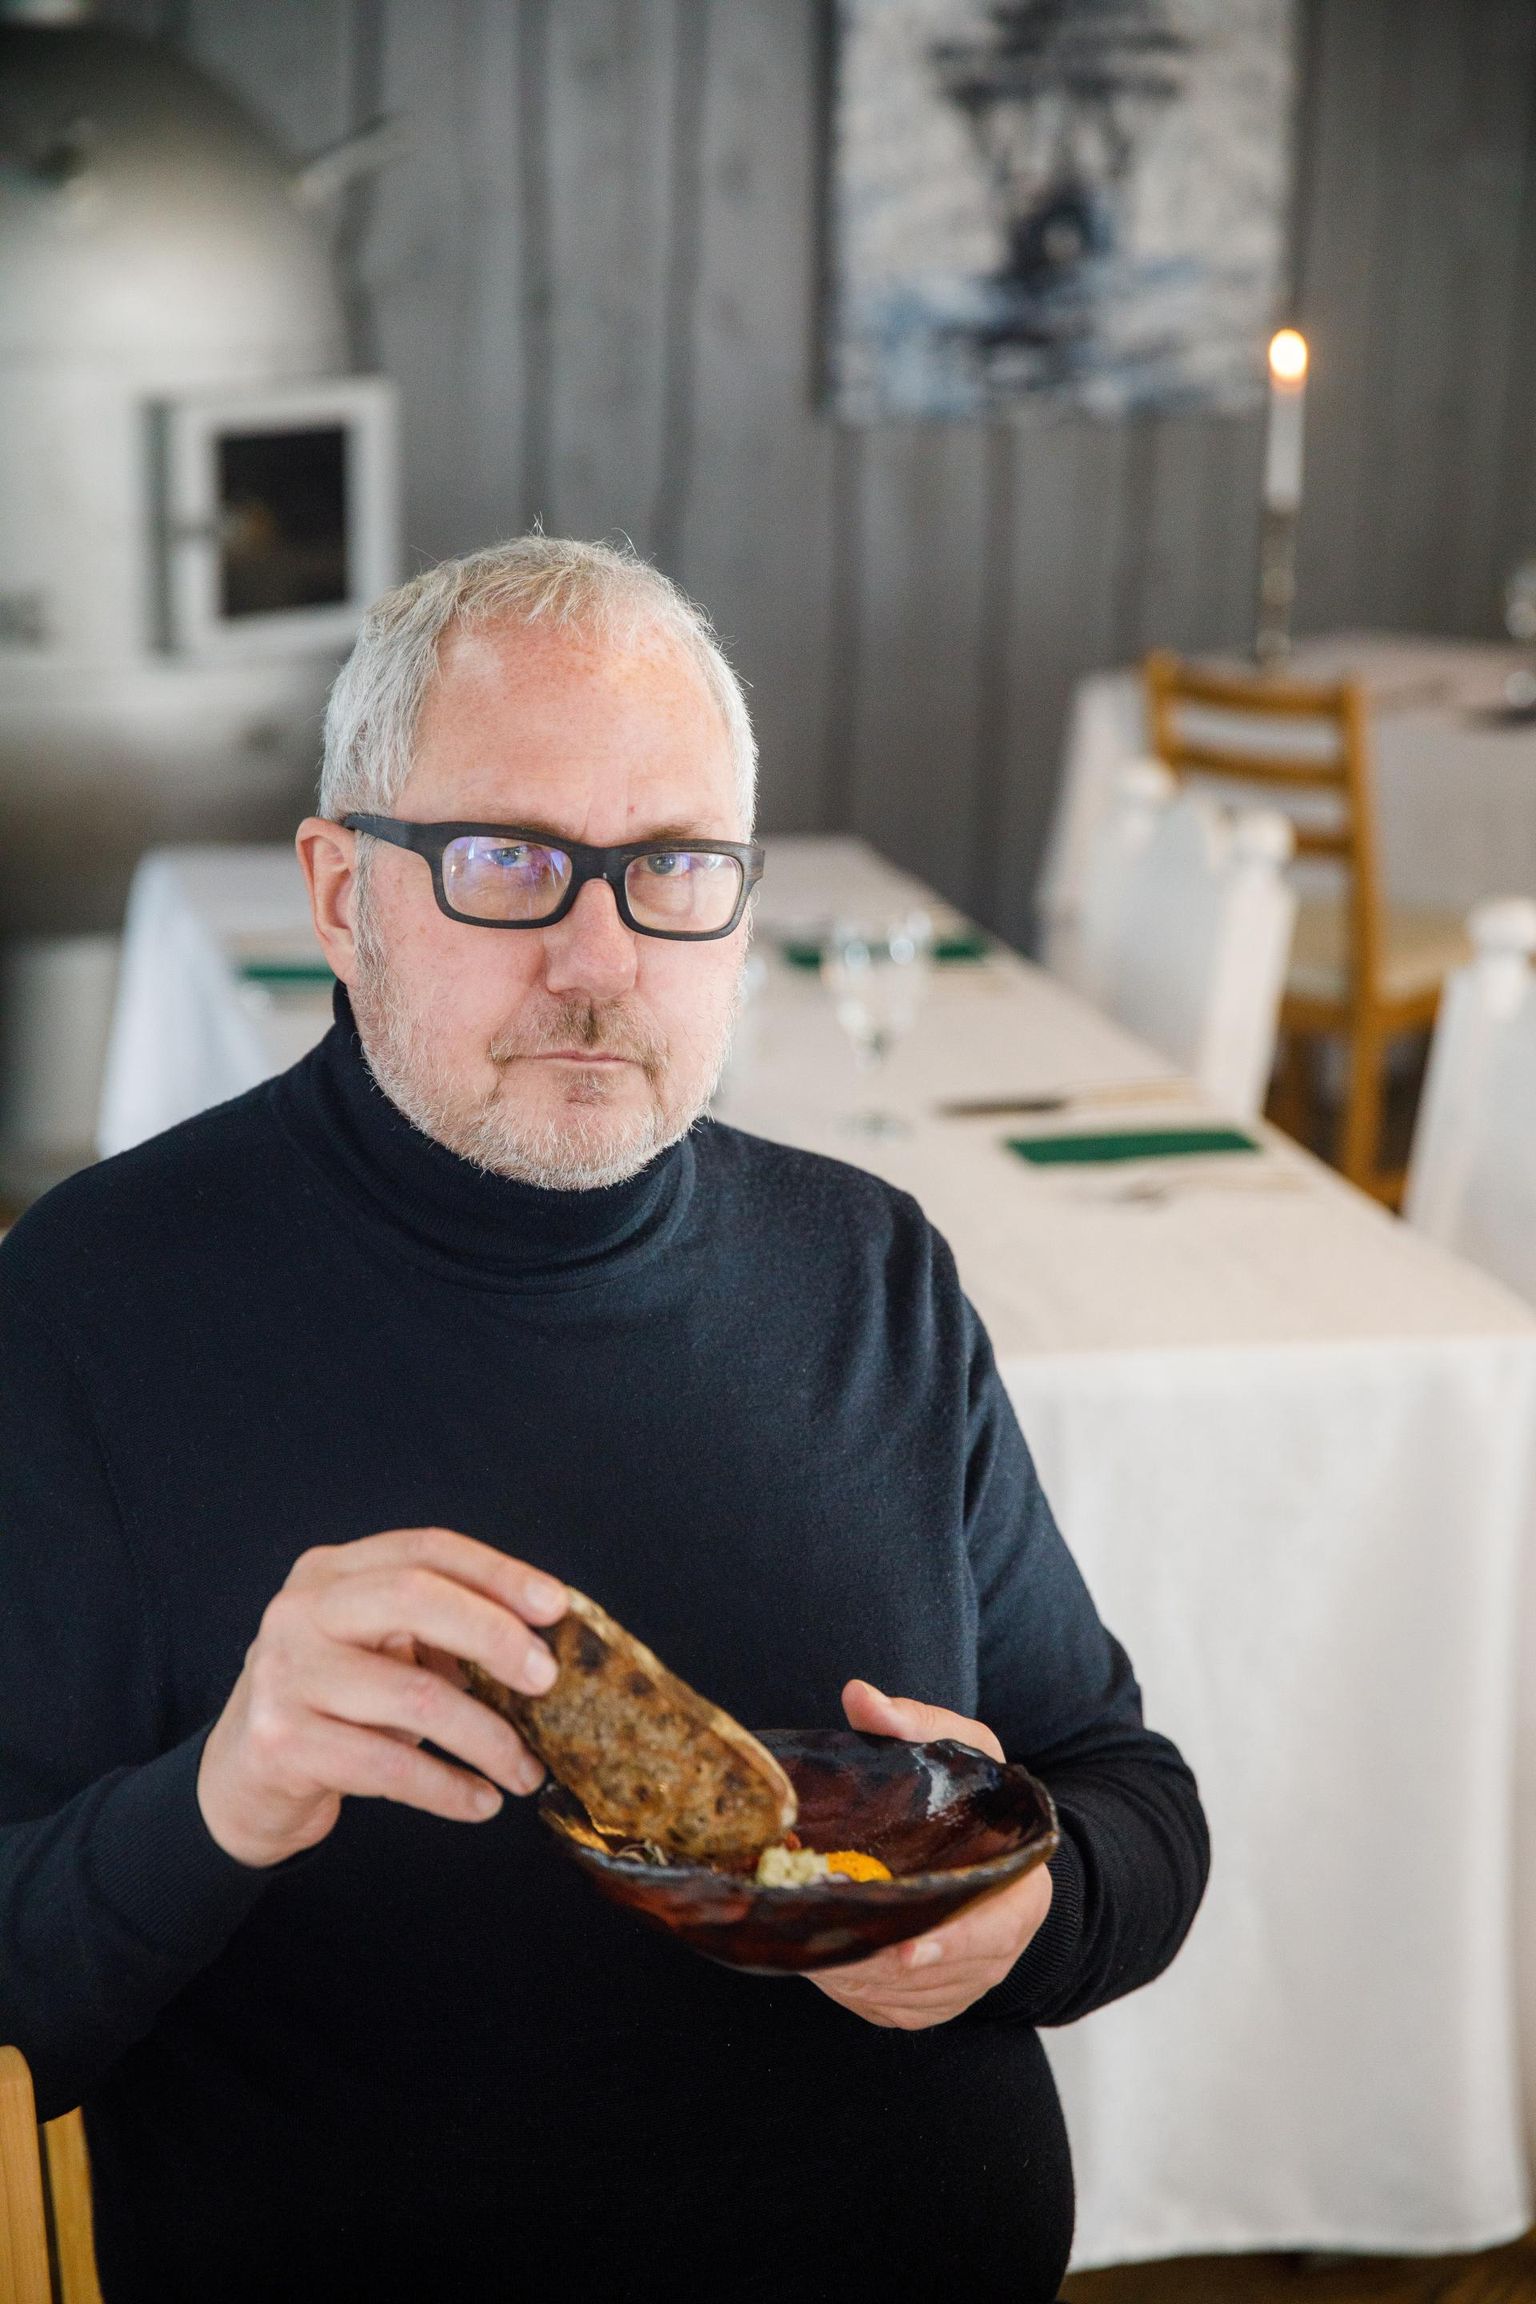 Nädalakirja Eesti Maitsed eestvedajat ning põhjamaade restoranigiidi White Guide Baltikumi juhti Aivar Hansonit paelub peale hea toidu kogu restoranis käimise kogemus, eesotsas võõrustajate elustiilist, teadmistest, oskustest ja emotsioonidest osa saamine.